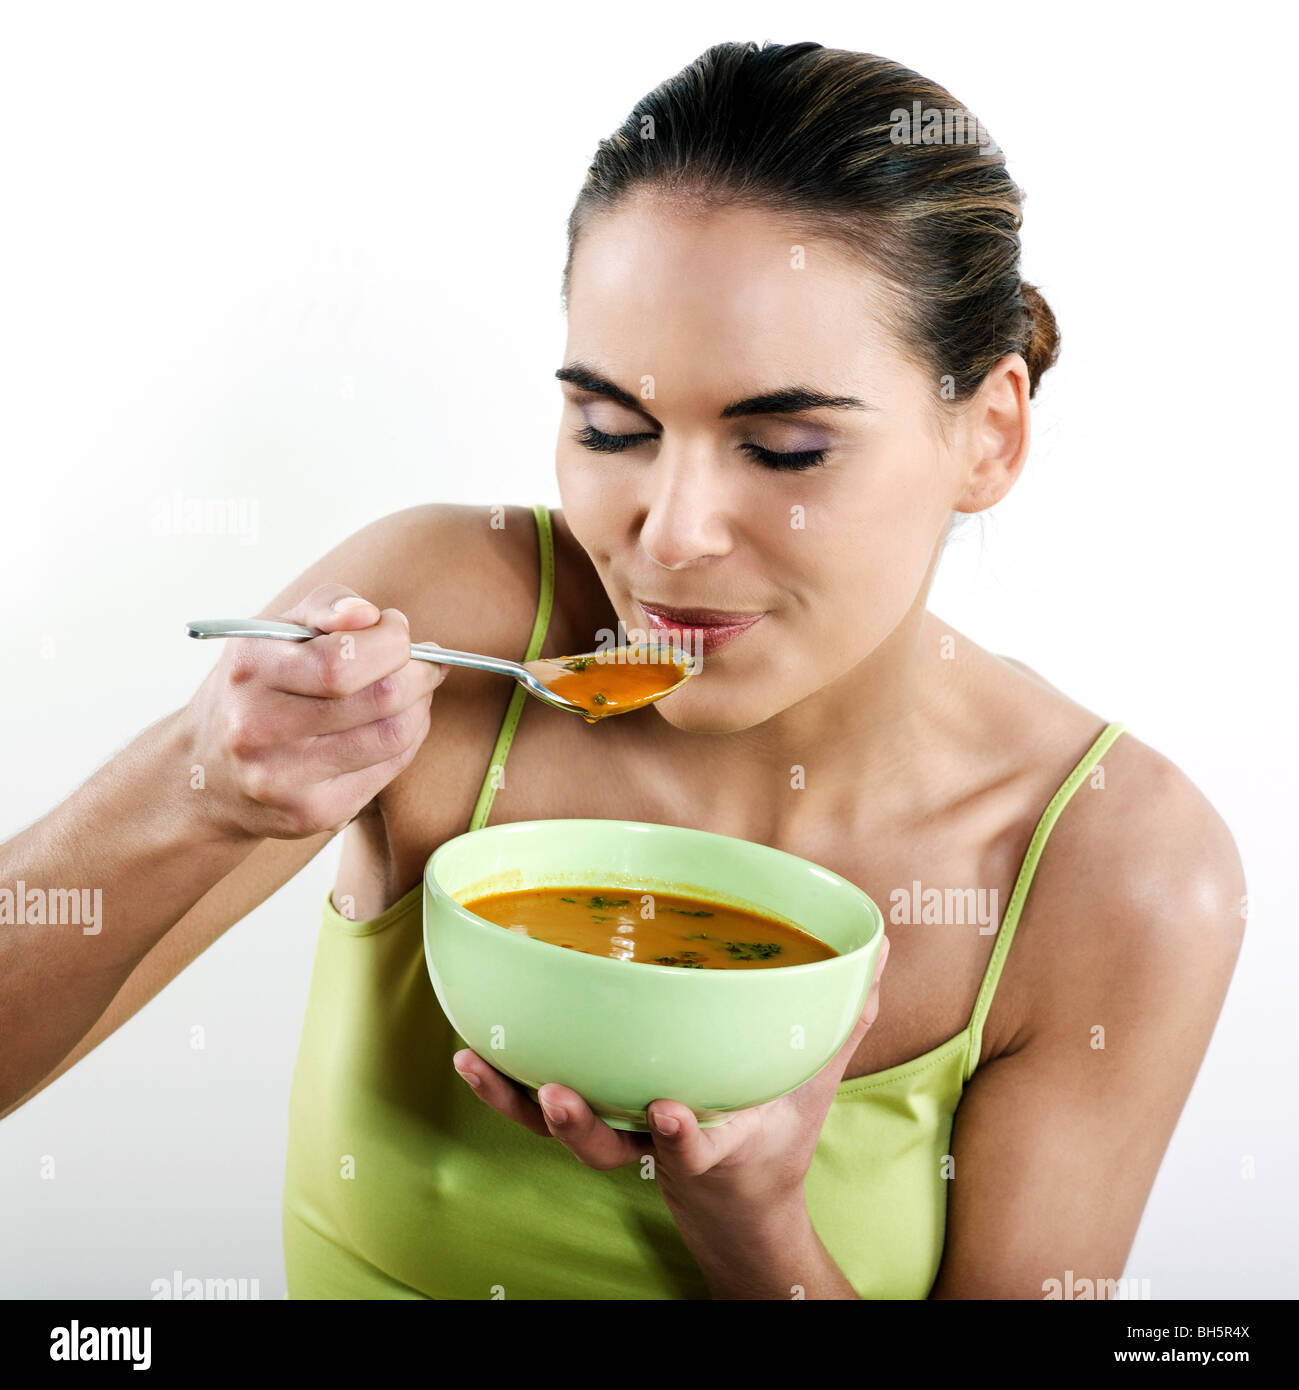 Есть. Суп кушать. Кушать. Человек ест суп. Девушка с супом.